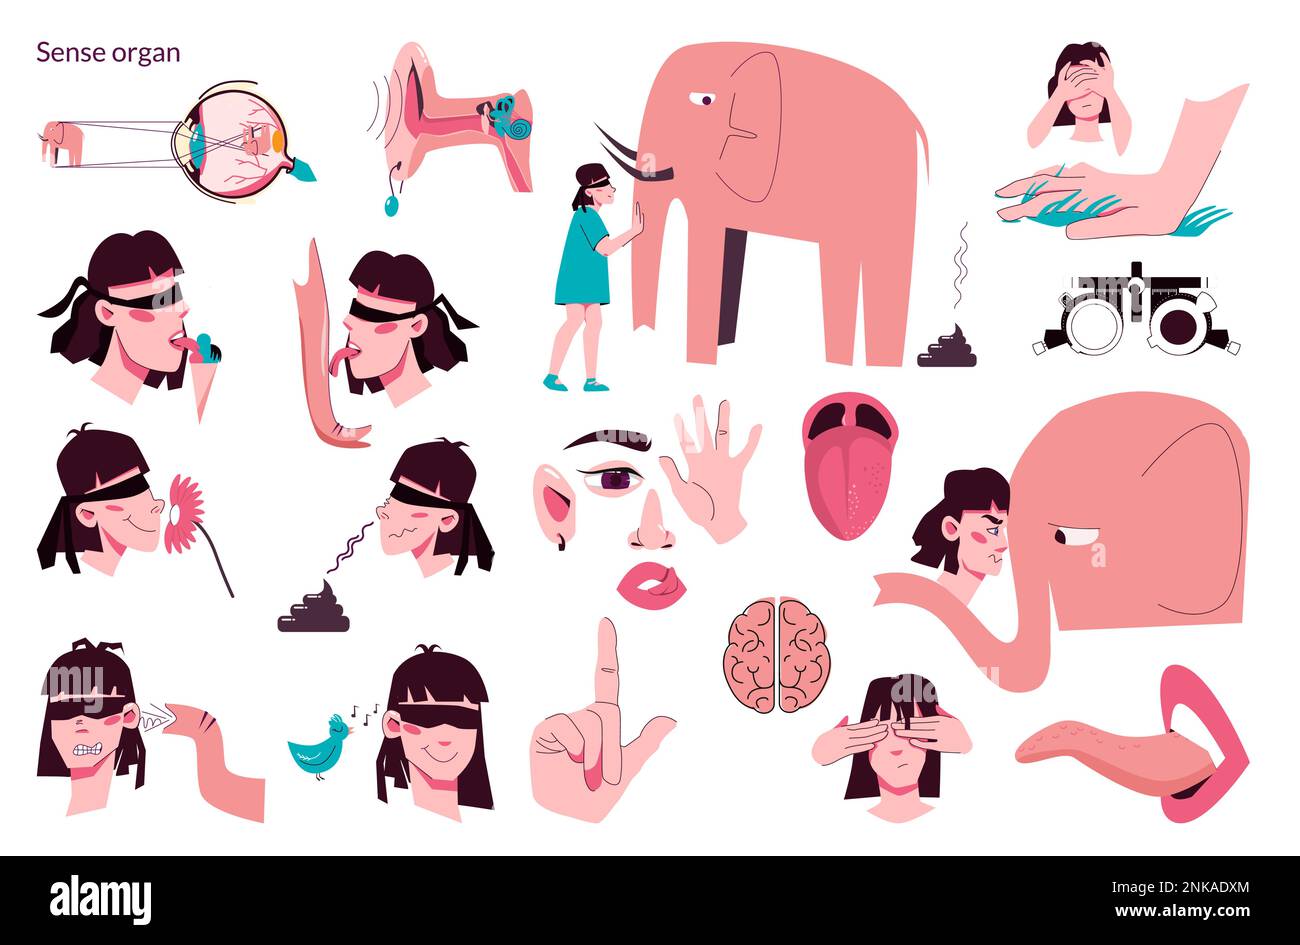 Sense organan people flat icon set umano sensi sentire odore composizione del gusto con esempi di gelateria elefante vettore illustrazione Illustrazione Vettoriale